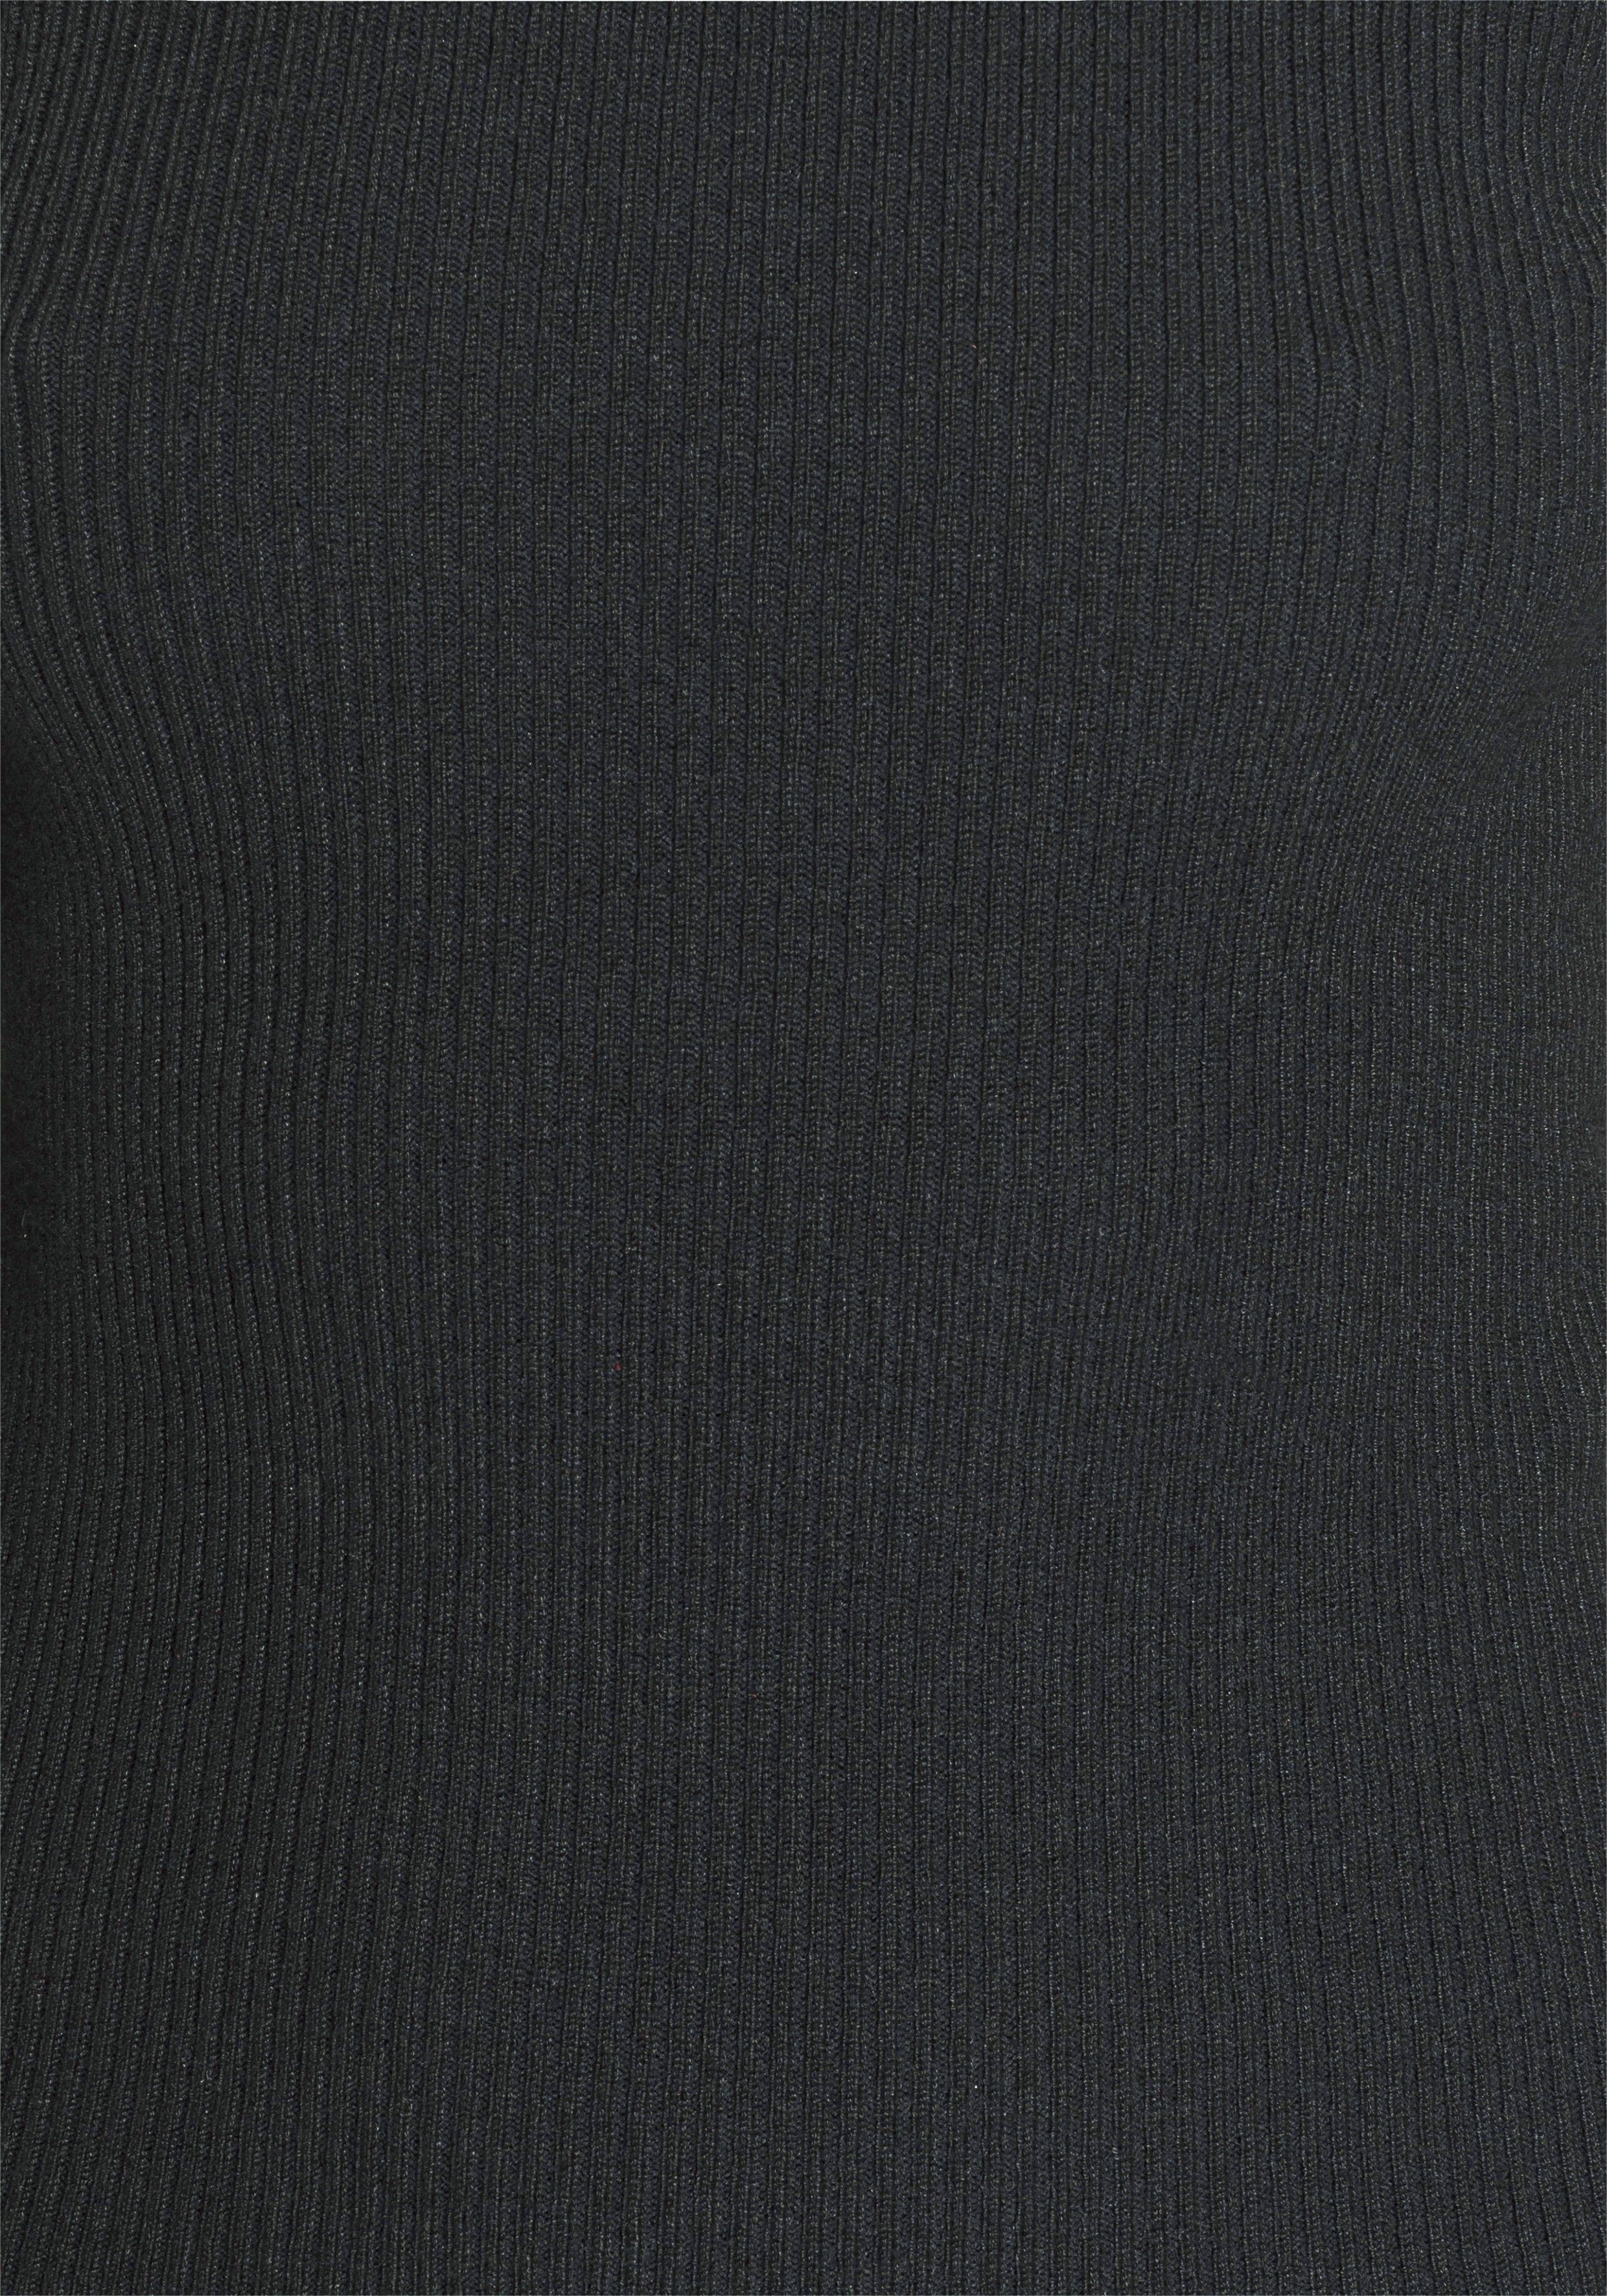 Rippqualität schwarz Strickpullover mit Melrose Knöpfen aus